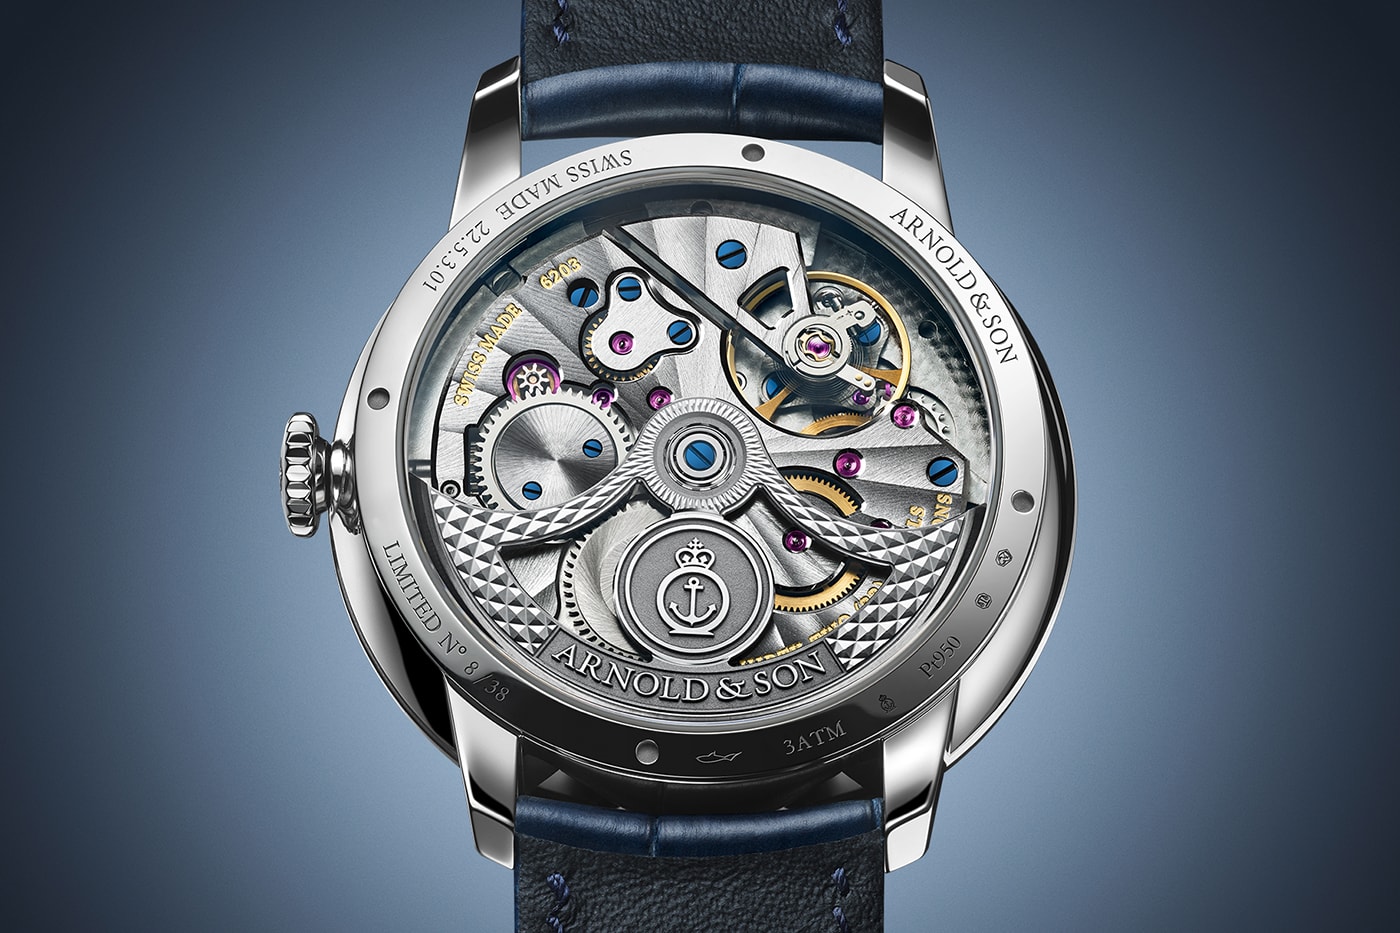 Arnold & Son DSTB 42 Timepieces Geneva Watch Days Release Info